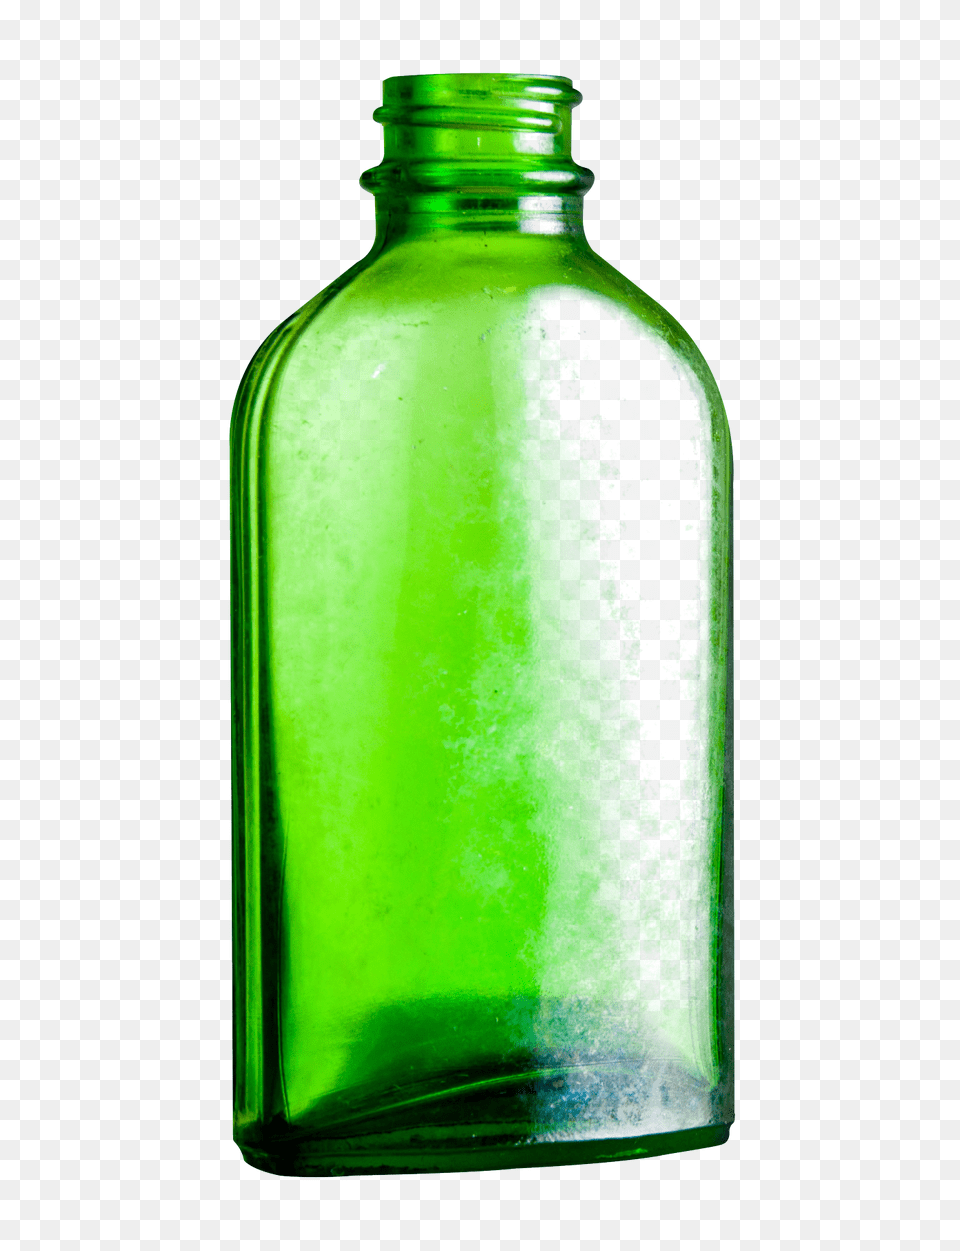 Hq Bottle Transparent Bottle, Glass, Shaker, Jar Free Png Download